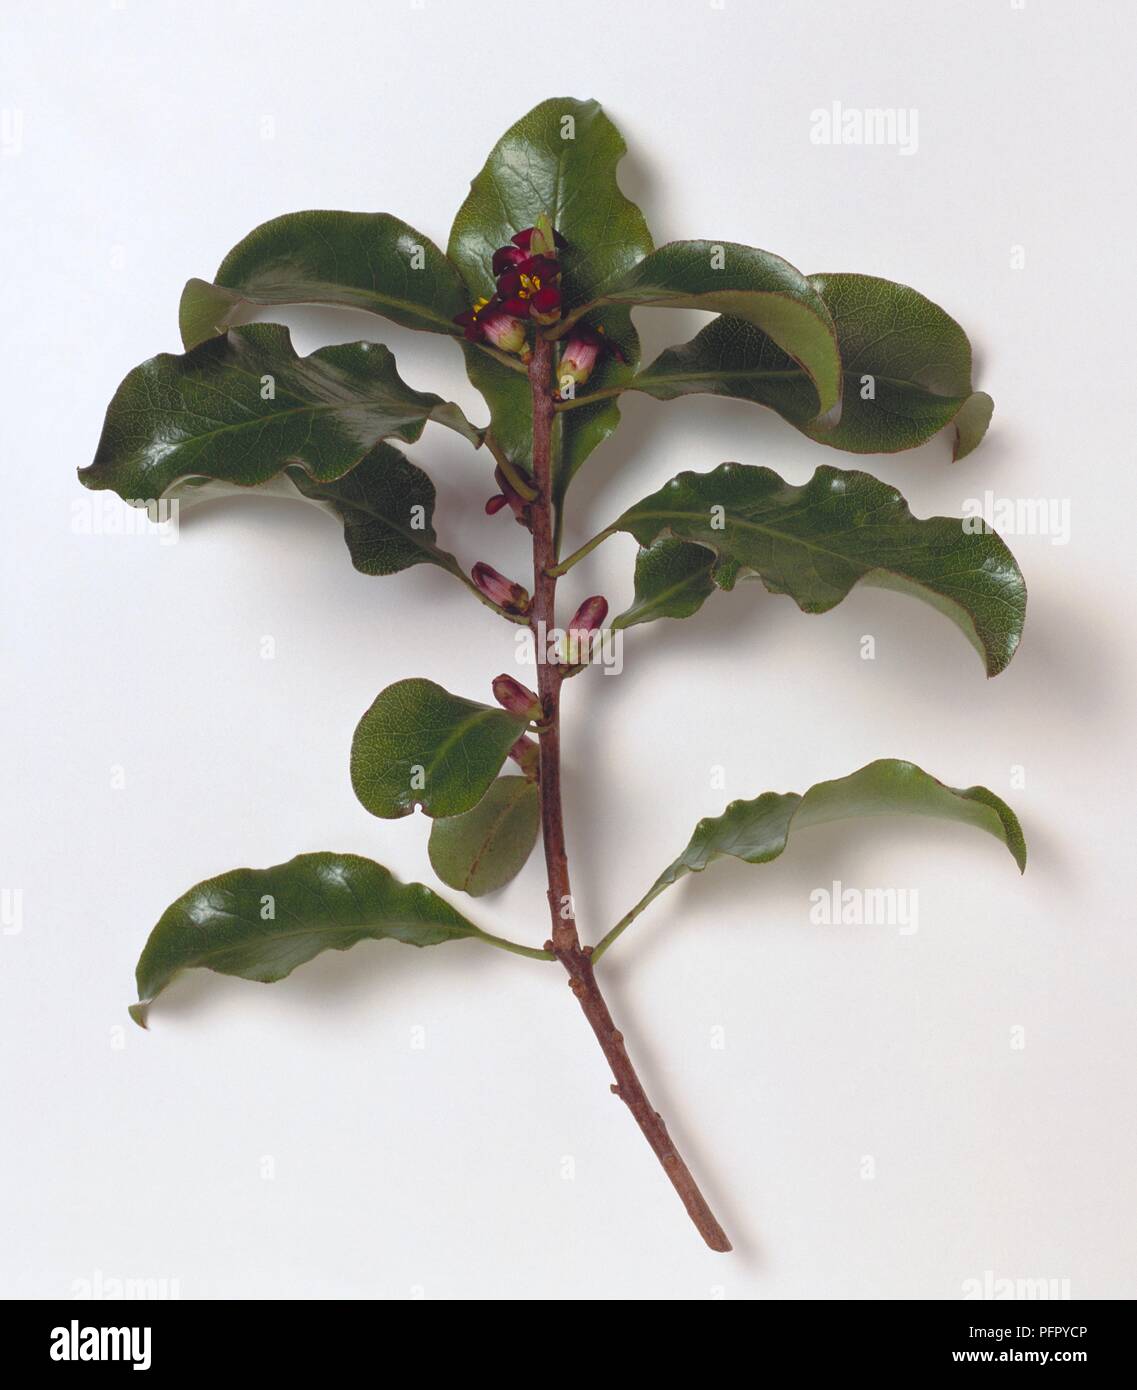 Pittosporum tenuifolium (Kohuhu), small branch with leaves and flowers Stock Photo